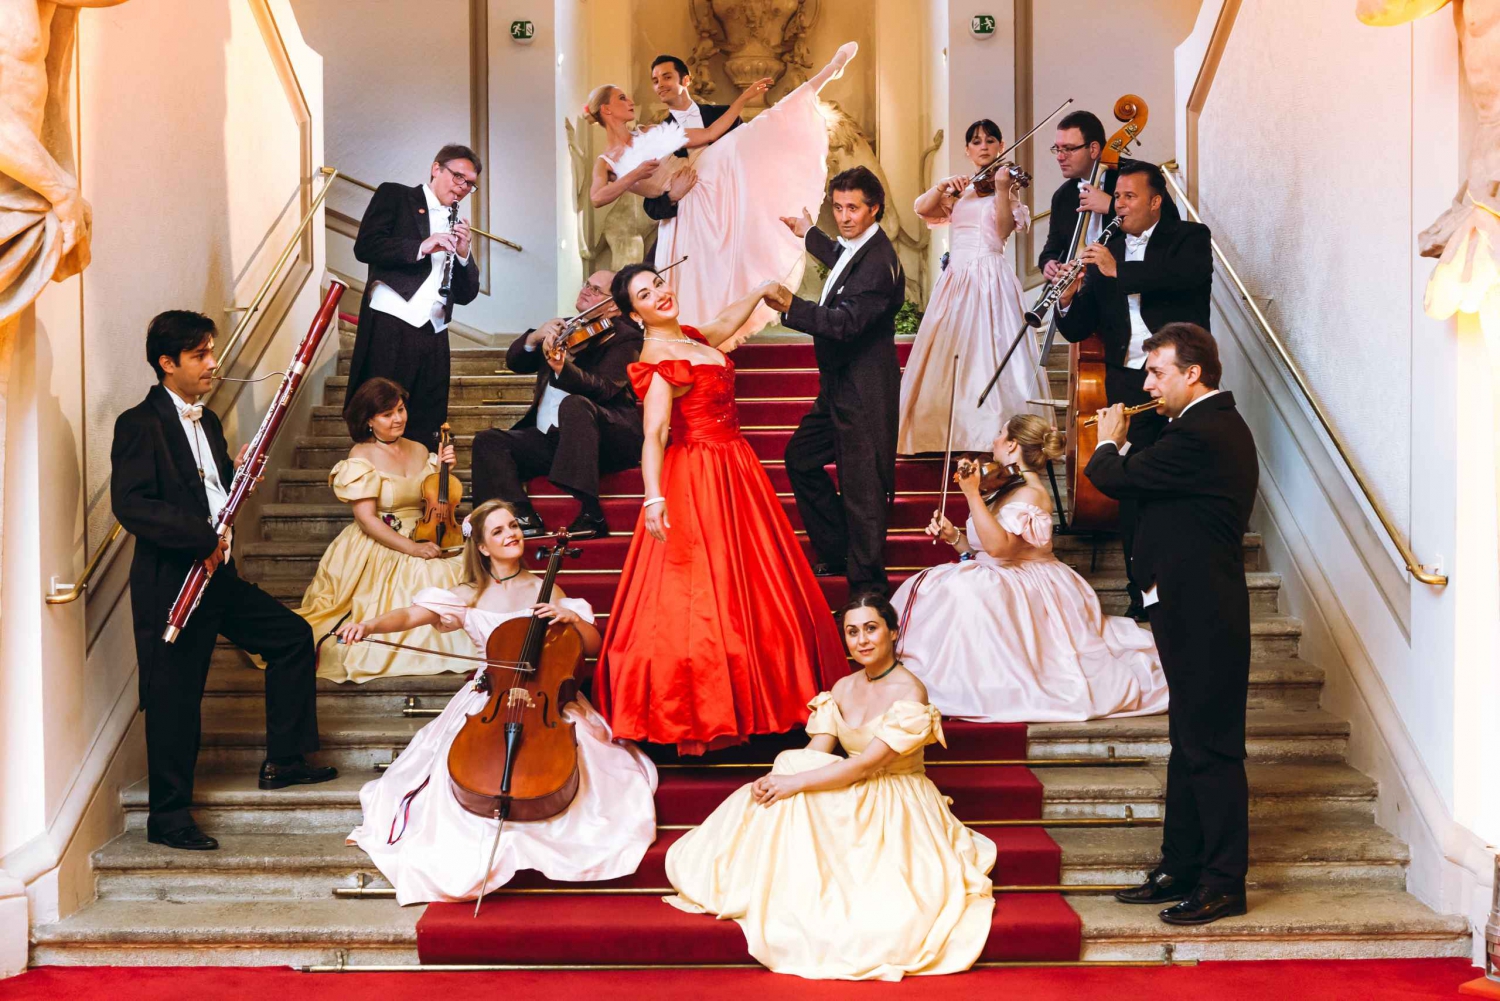 Vienna: Mozart and Strauss Concert in Palais Auersperg